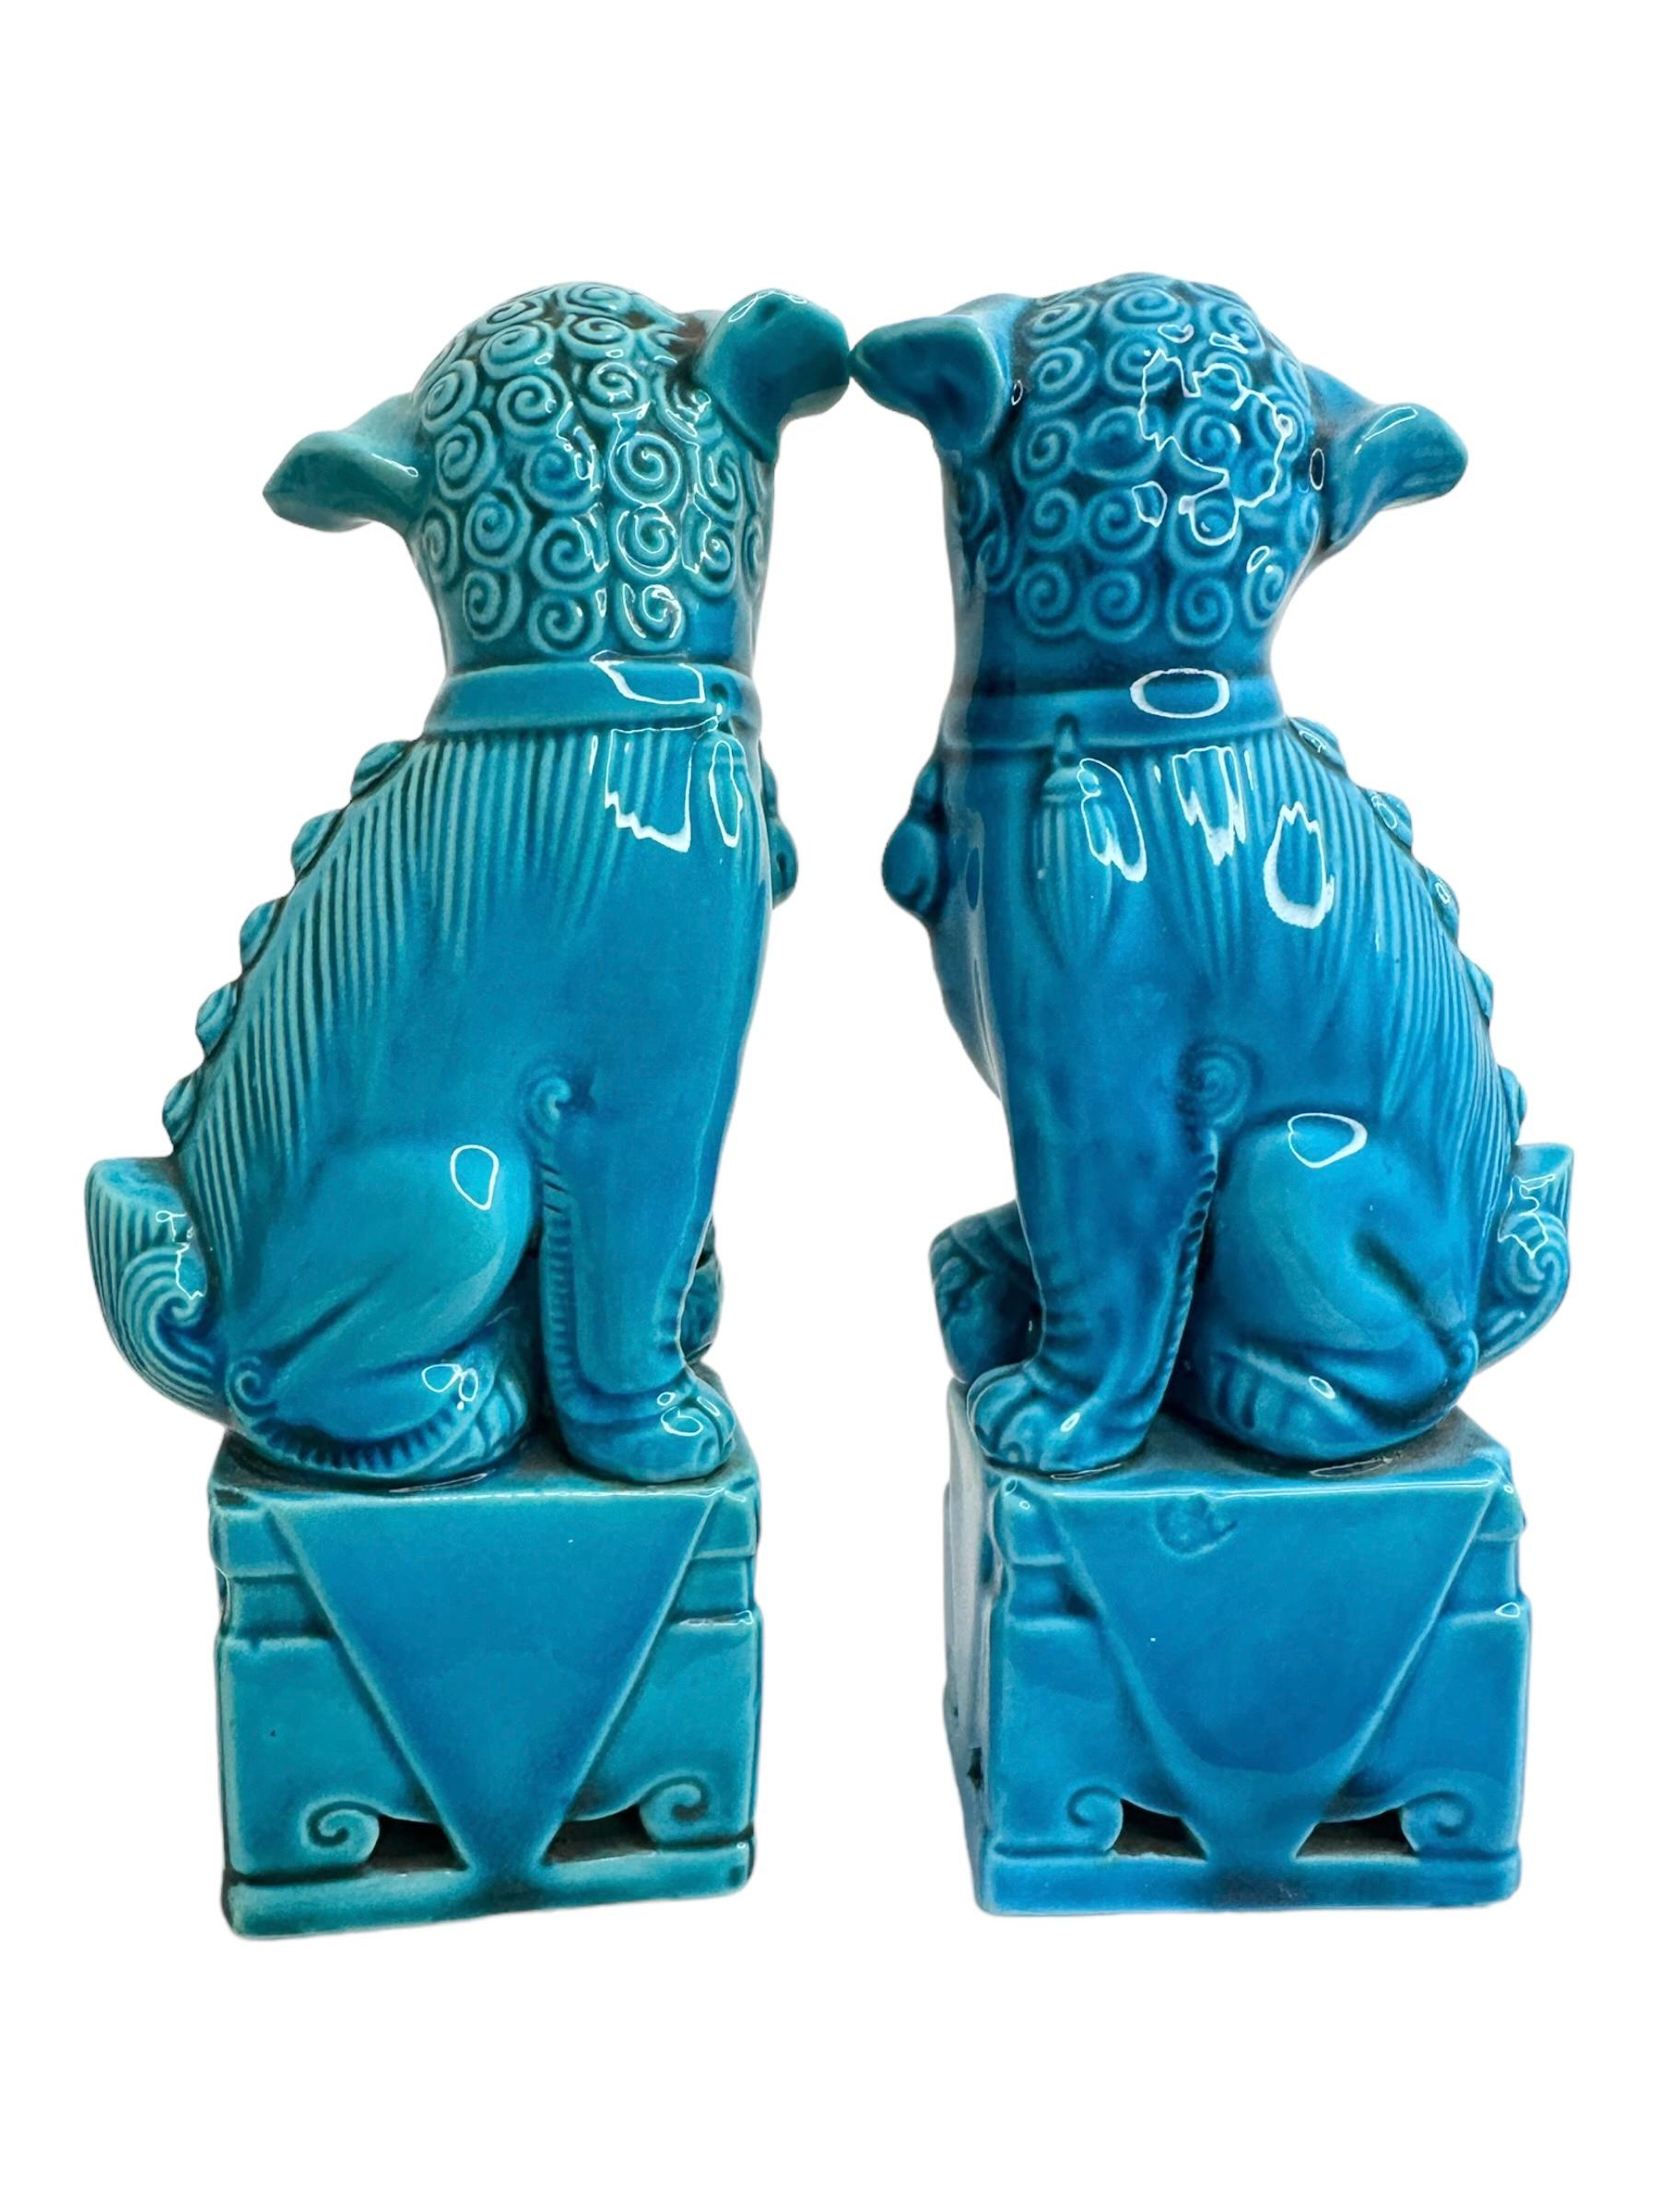 Ein sehr schönes Paar türkisblauer Keramikhunde im Vintage-Stil, circa 1980er Jahre. Hervorragender Zustand und Patina; ein tolles Deko-Objekt für jeden Raum! Gefunden bei einem Nachlassverkauf in Wien, Österreich.